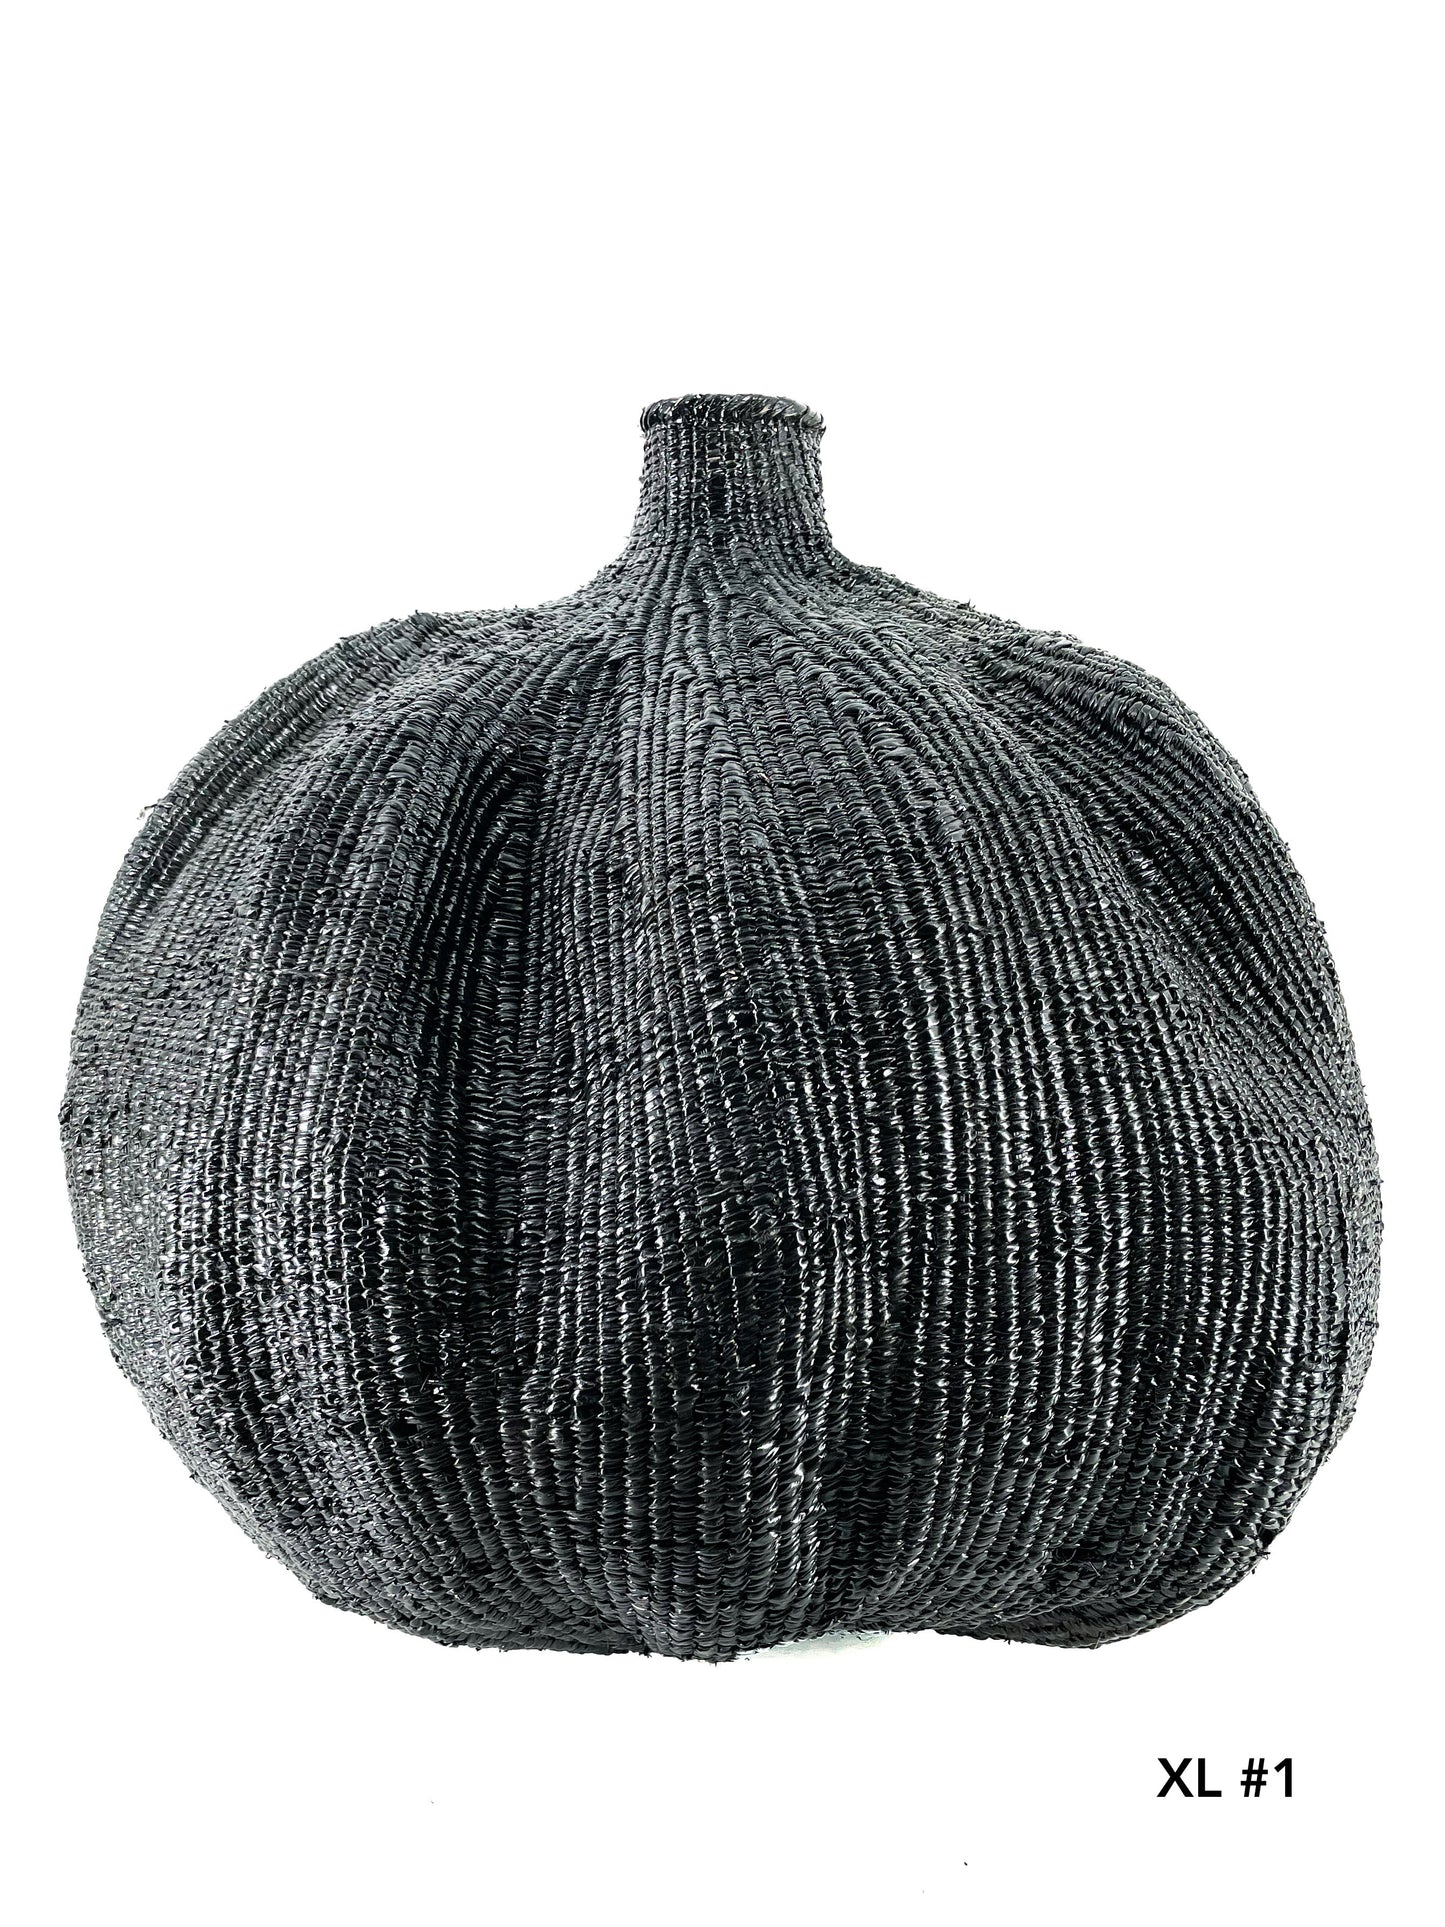 Garlic gourd black